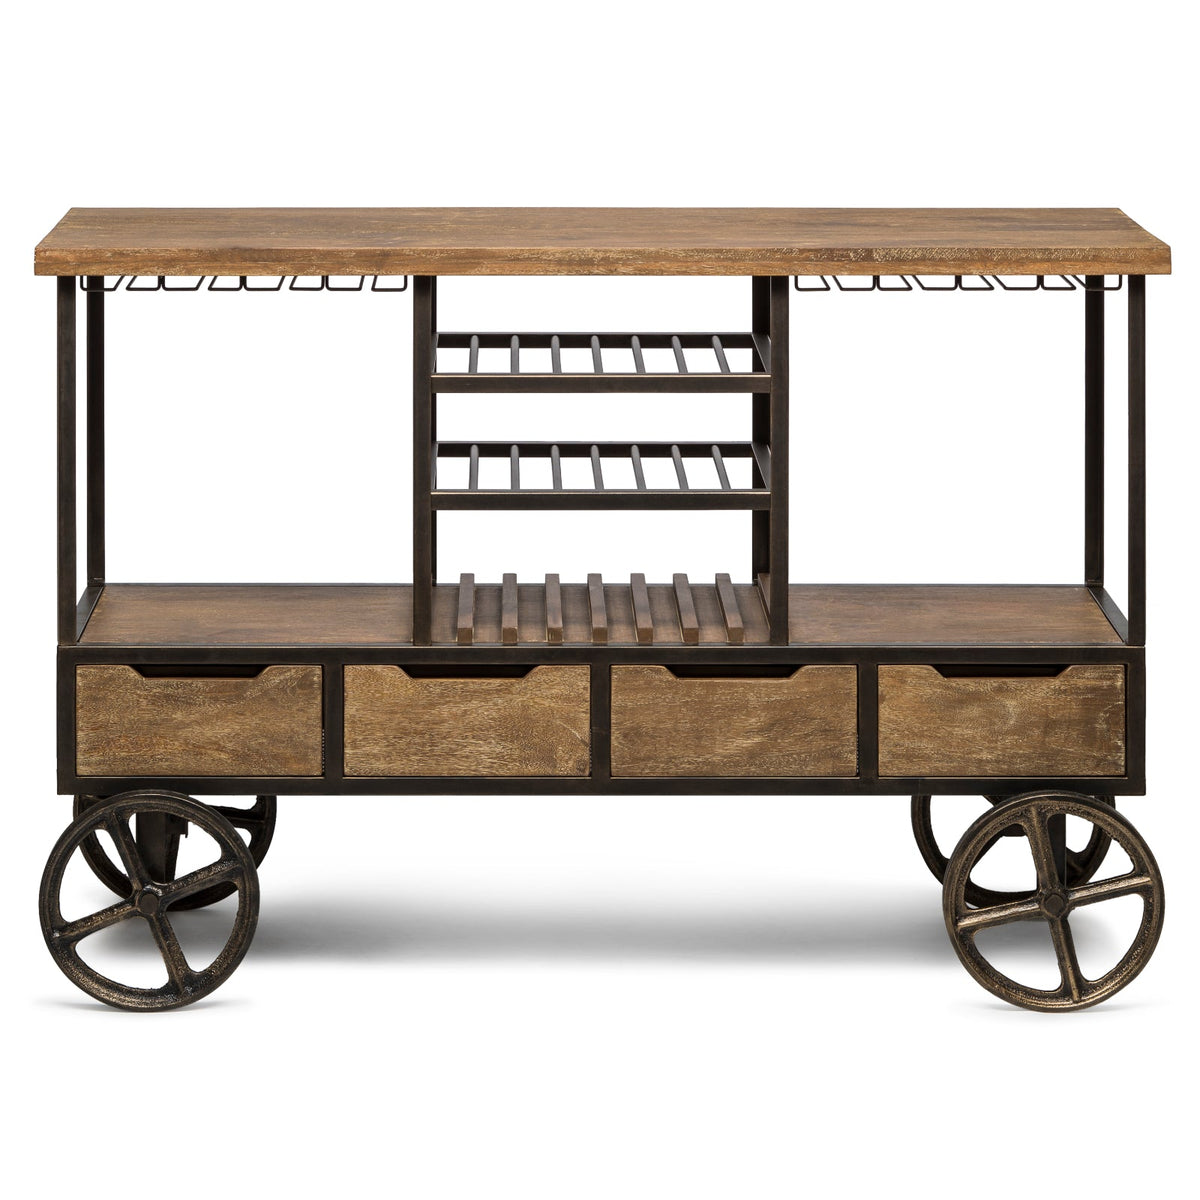 Wooden Bar Cart with Wine Storage - Wine Stash